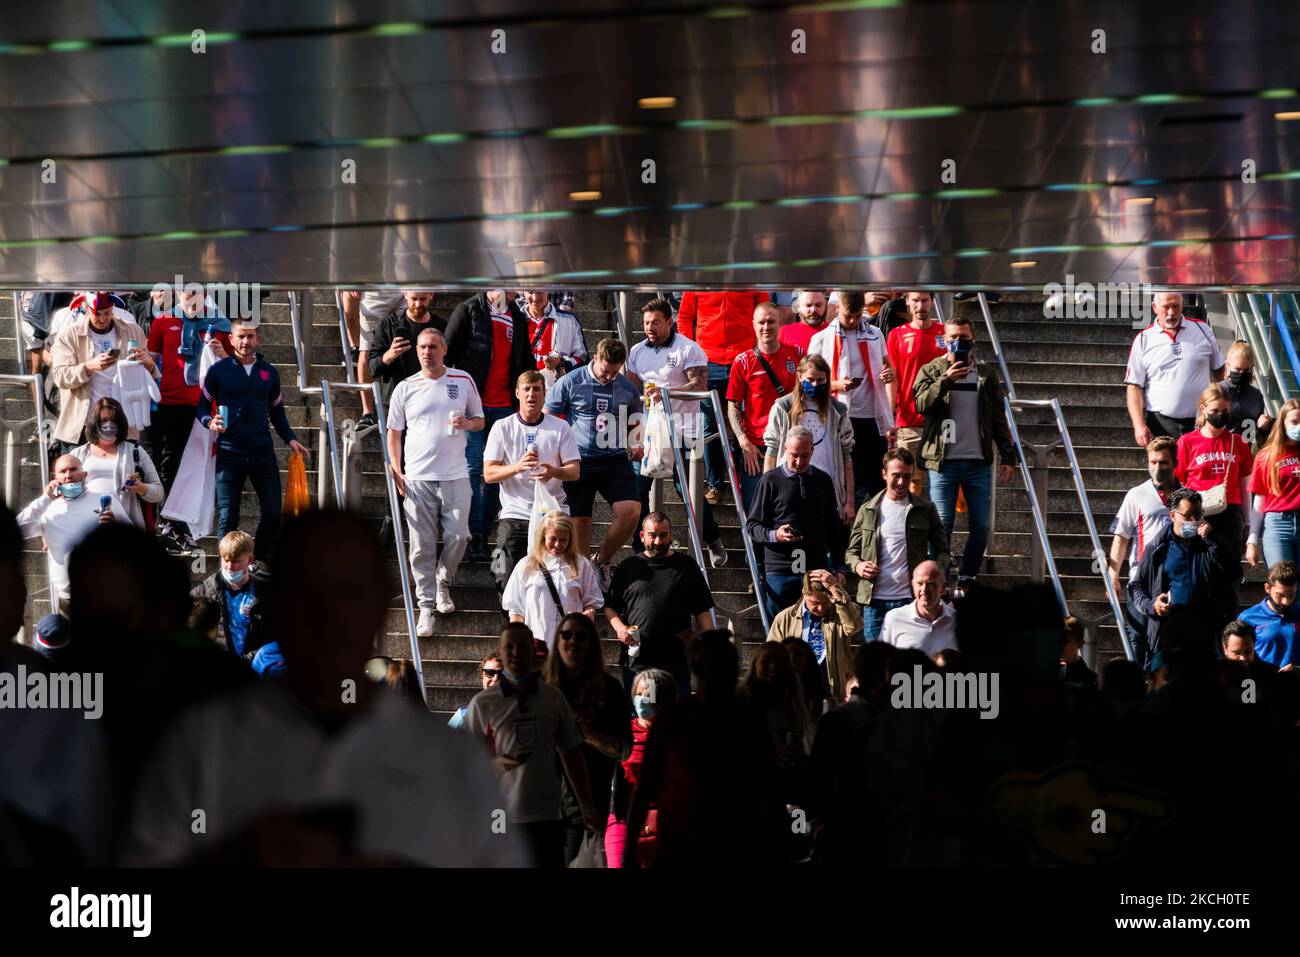 A View of Wembley Stadium à Londres, Grande-Bretagne, 7 juillet 2021. L'Angleterre a atteint les demi-finales du Championnat d'Europe de football de l'UEFA 2020 dans l'espoir de faire la finale pour la première fois dans l'histoire de la compétition. (Photo de Maciek Musialek/NurPhoto) Banque D'Images